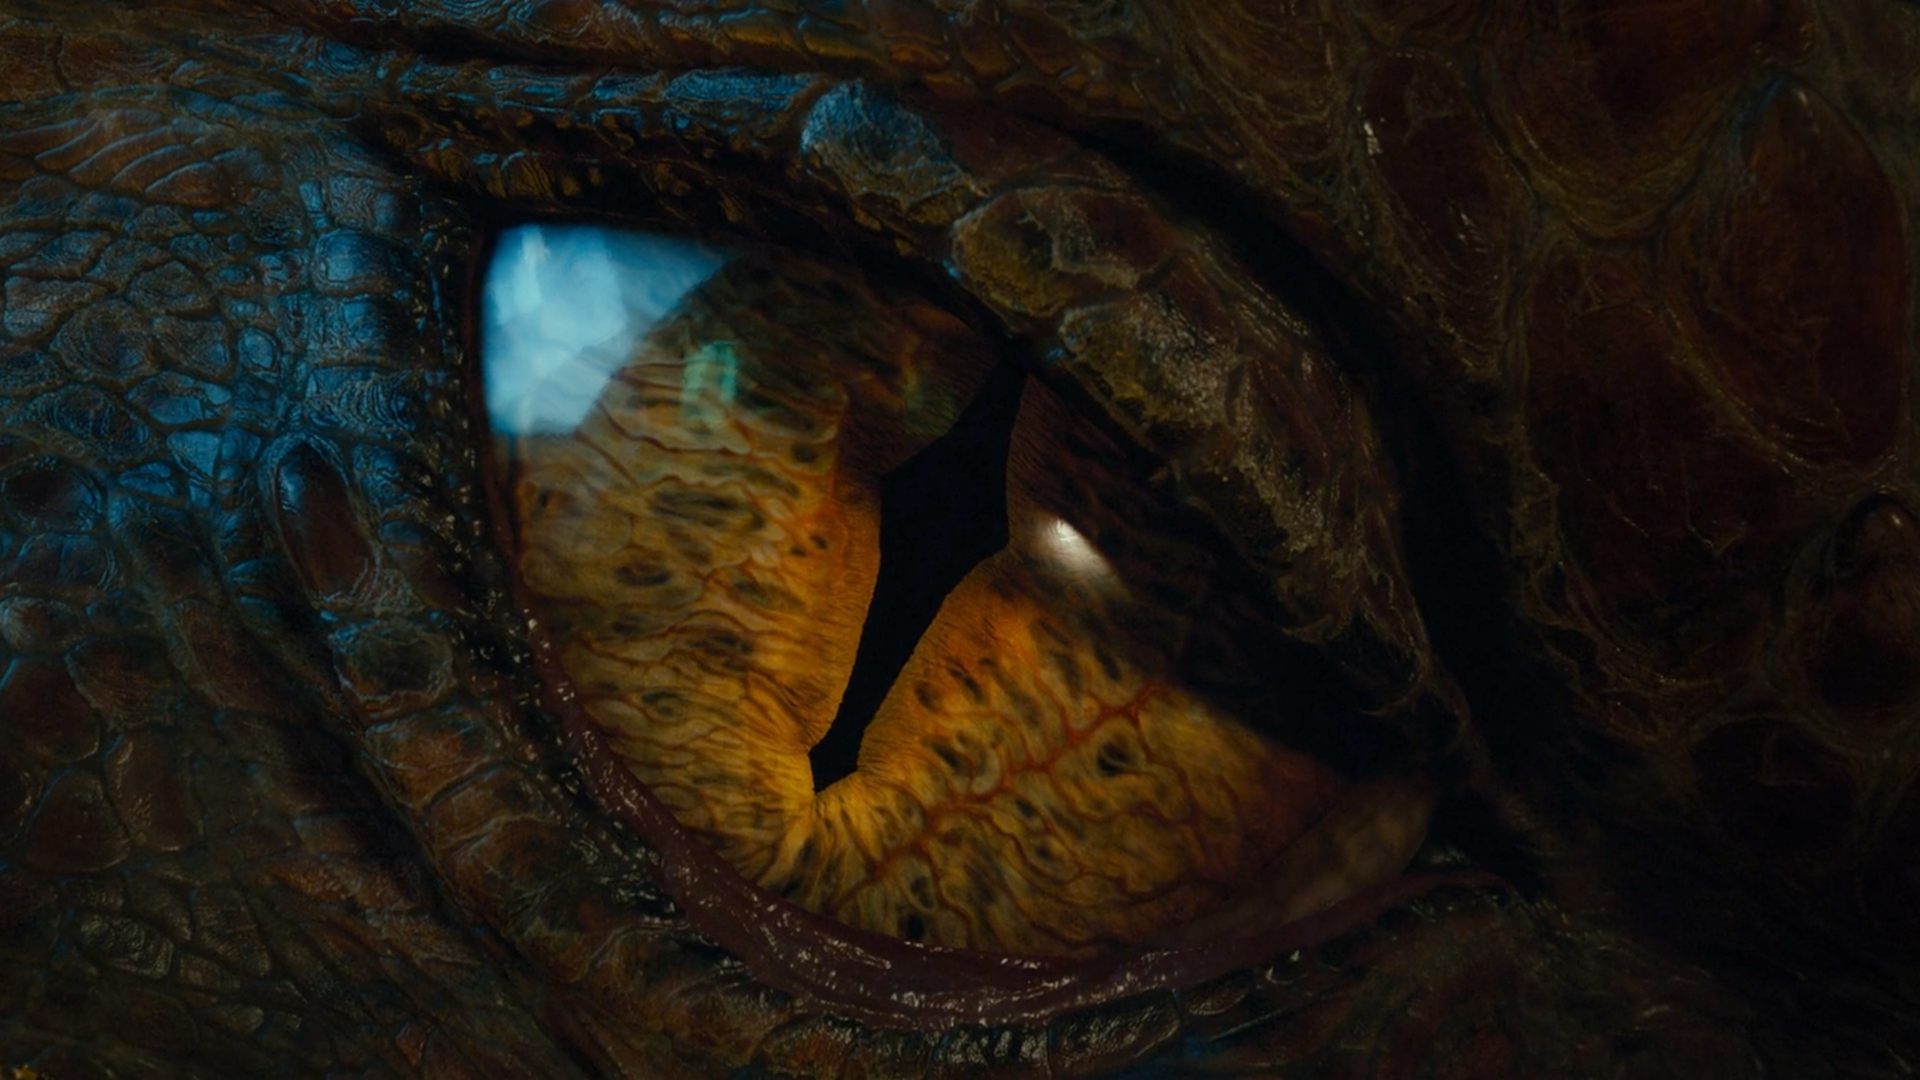 Eye of the dragon - The Hobbit - The Desolation of Smaug